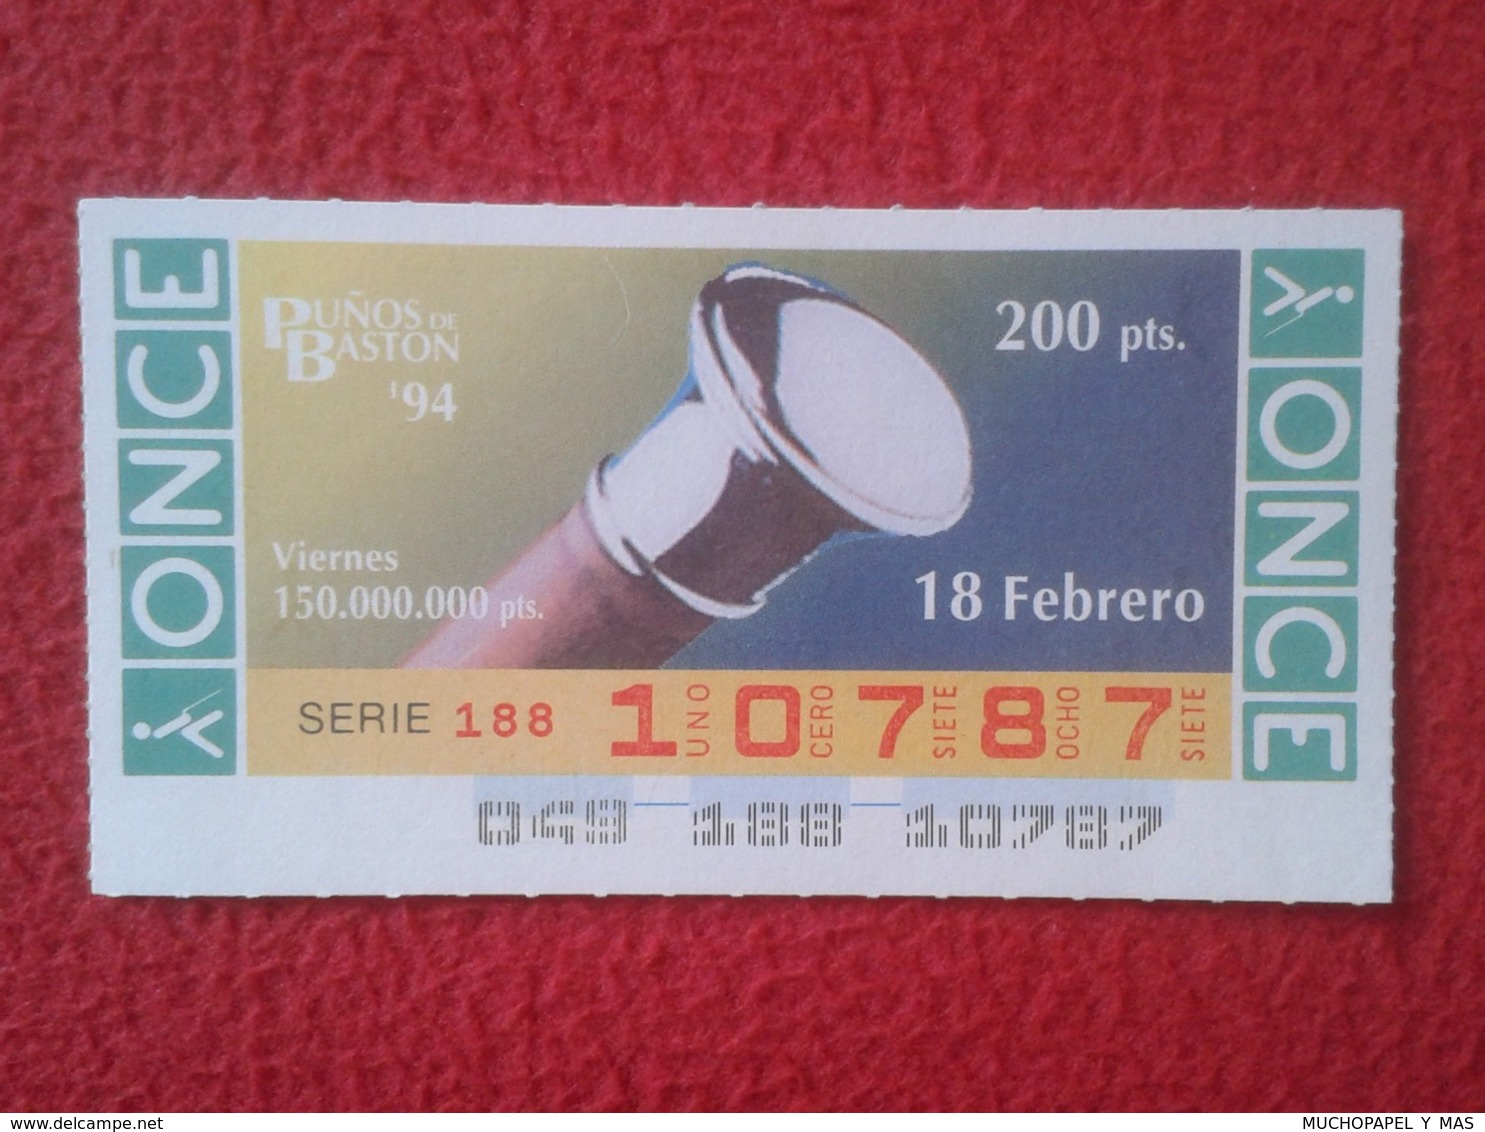 CUPÓN DE ONCE 1994 LOTTERY LOTERIE SPAIN BLIND LOTERÍA PUÑOS DE BASTÓN CANE CUFFS CUFF Poignets De Canne VER FOTOS Y DES - Billetes De Lotería